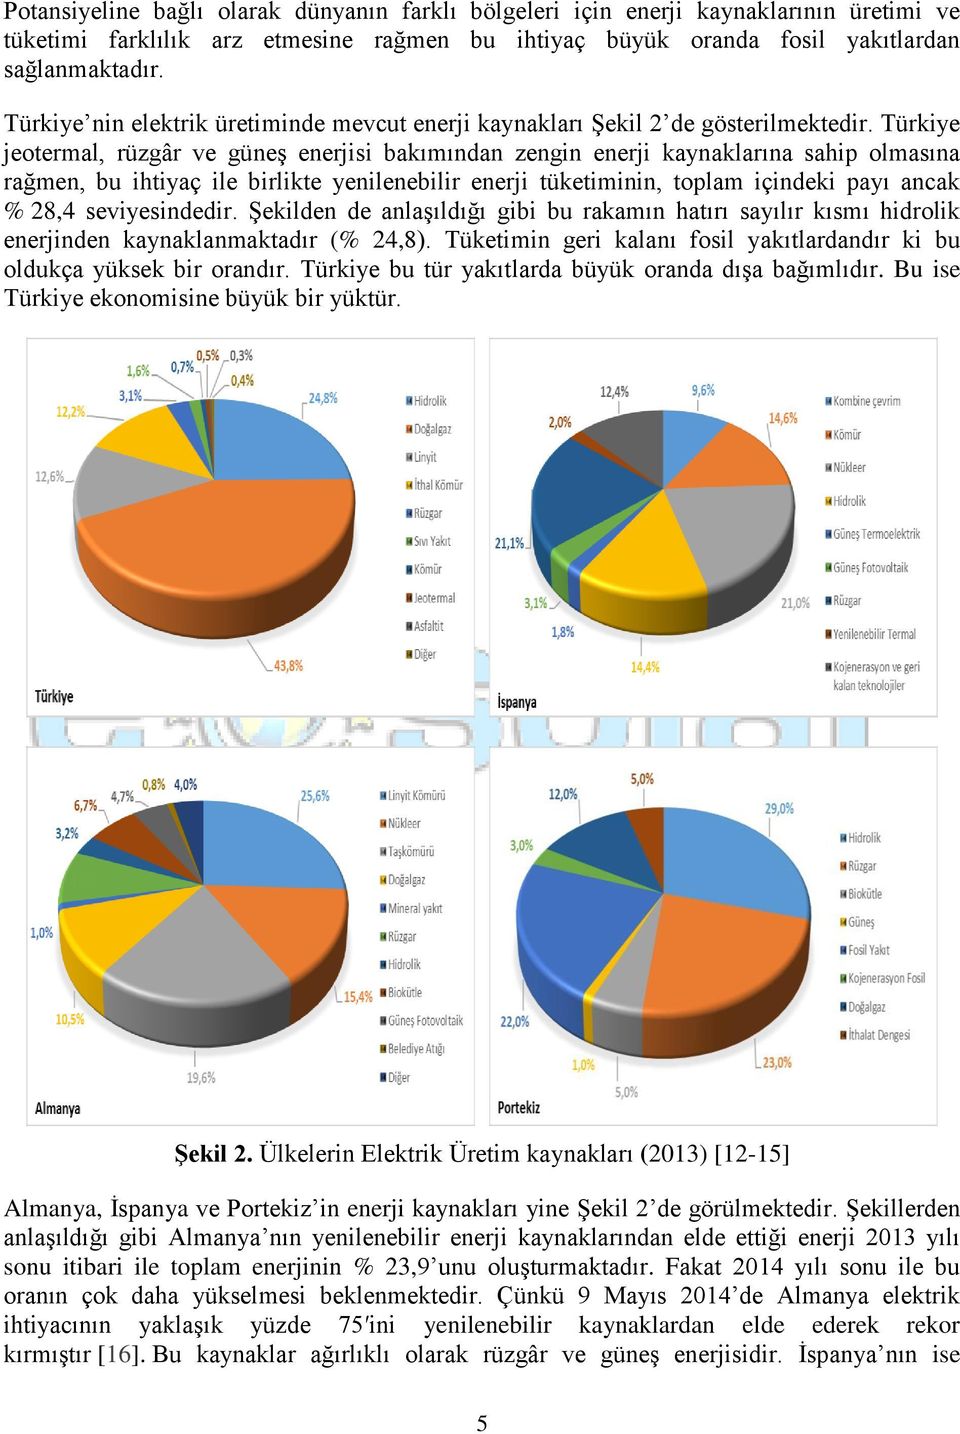 Türkiye jeotermal, rüzgâr ve güneş enerjisi bakımından zengin enerji kaynaklarına sahip olmasına rağmen, bu ihtiyaç ile birlikte yenilenebilir enerji tüketiminin, toplam içindeki payı ancak % 28,4